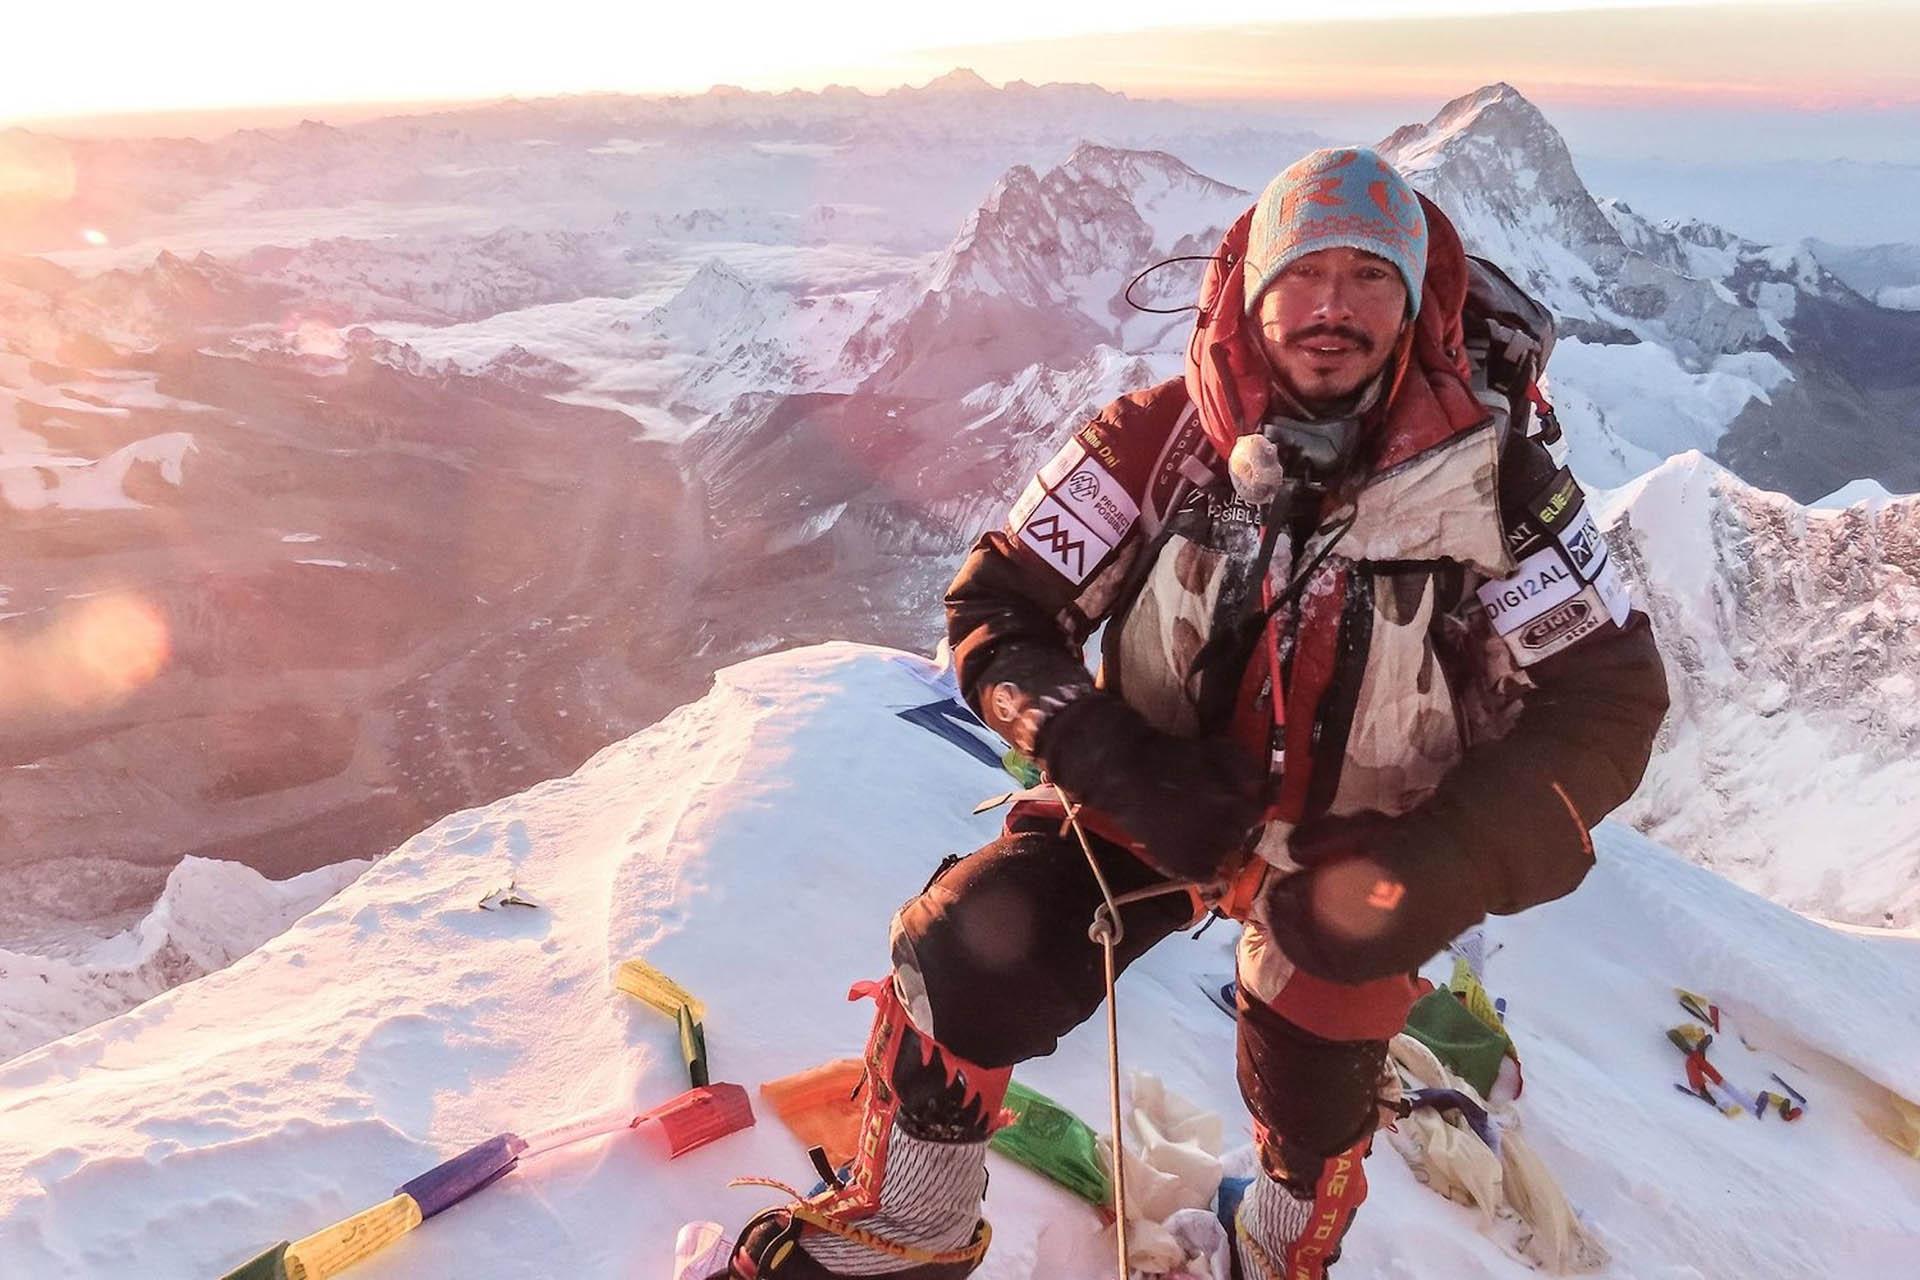 Nirmal Purja در بالای قله در مستند 14 Peaks: Nothing Is Impossible